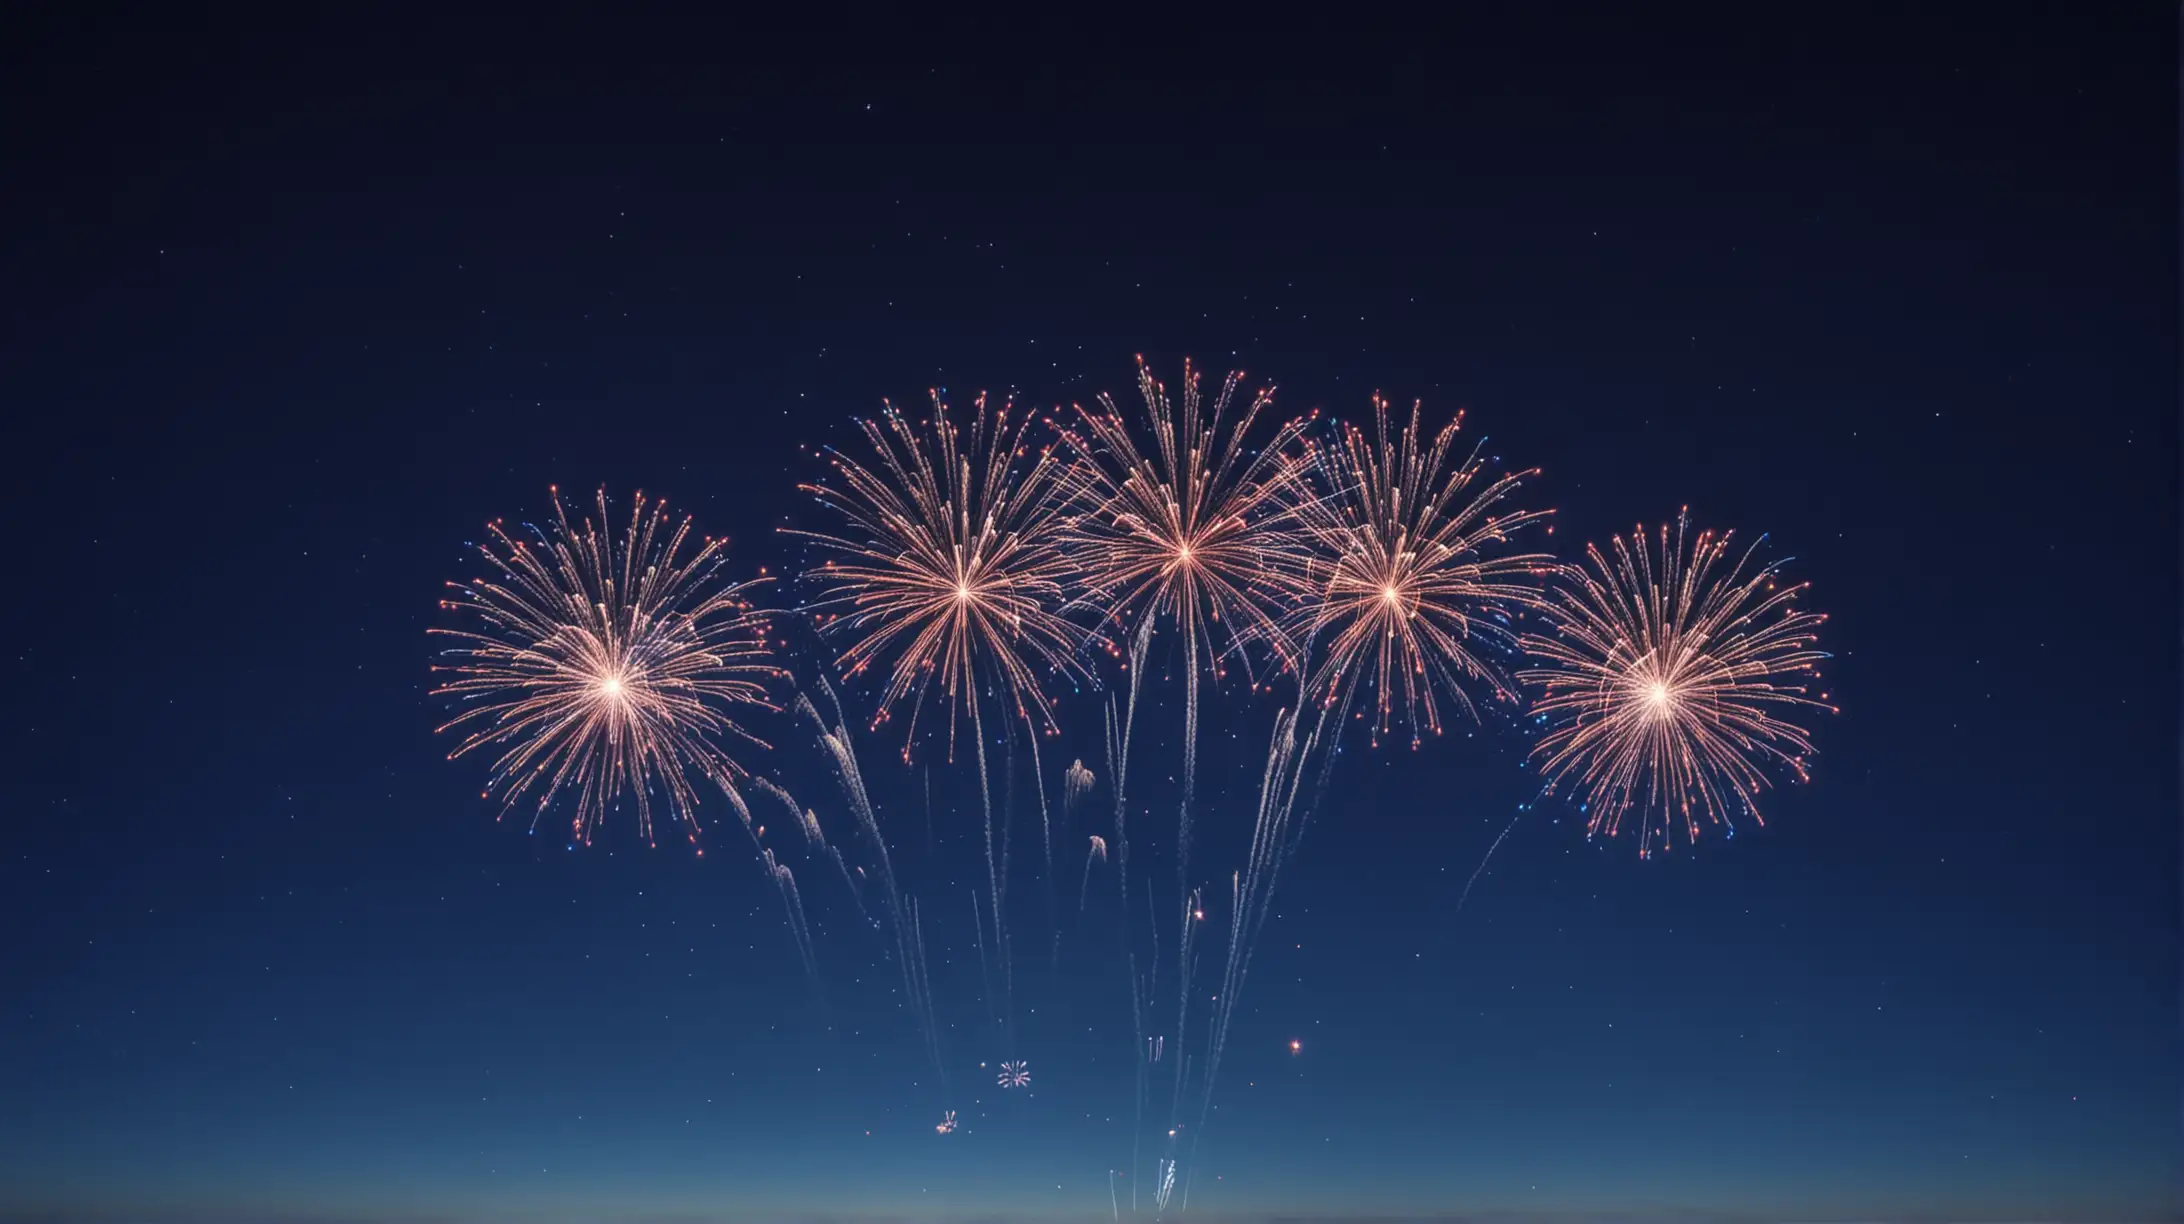 Vibrant Miniature Fireworks Illuminating Vast Night Sky